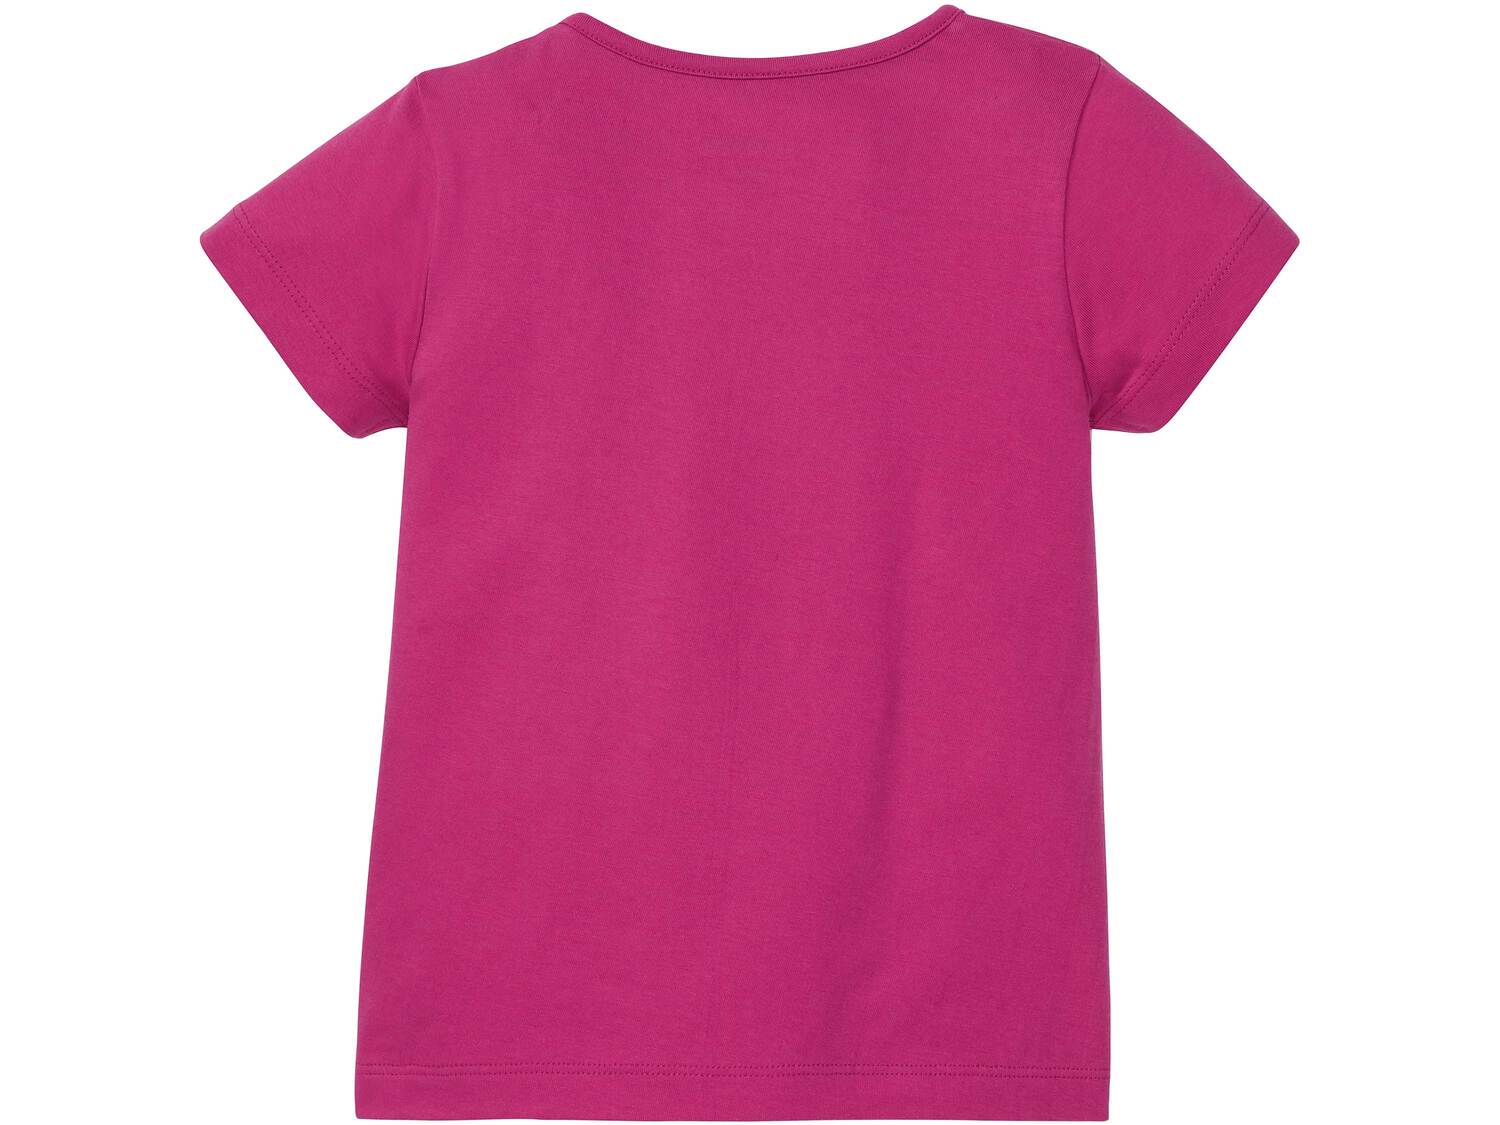 Koszulka dziewczęca Lupilu, cena 14,99 PLN 
- 100% bawełny
- rozmiary: 86-116
- ...